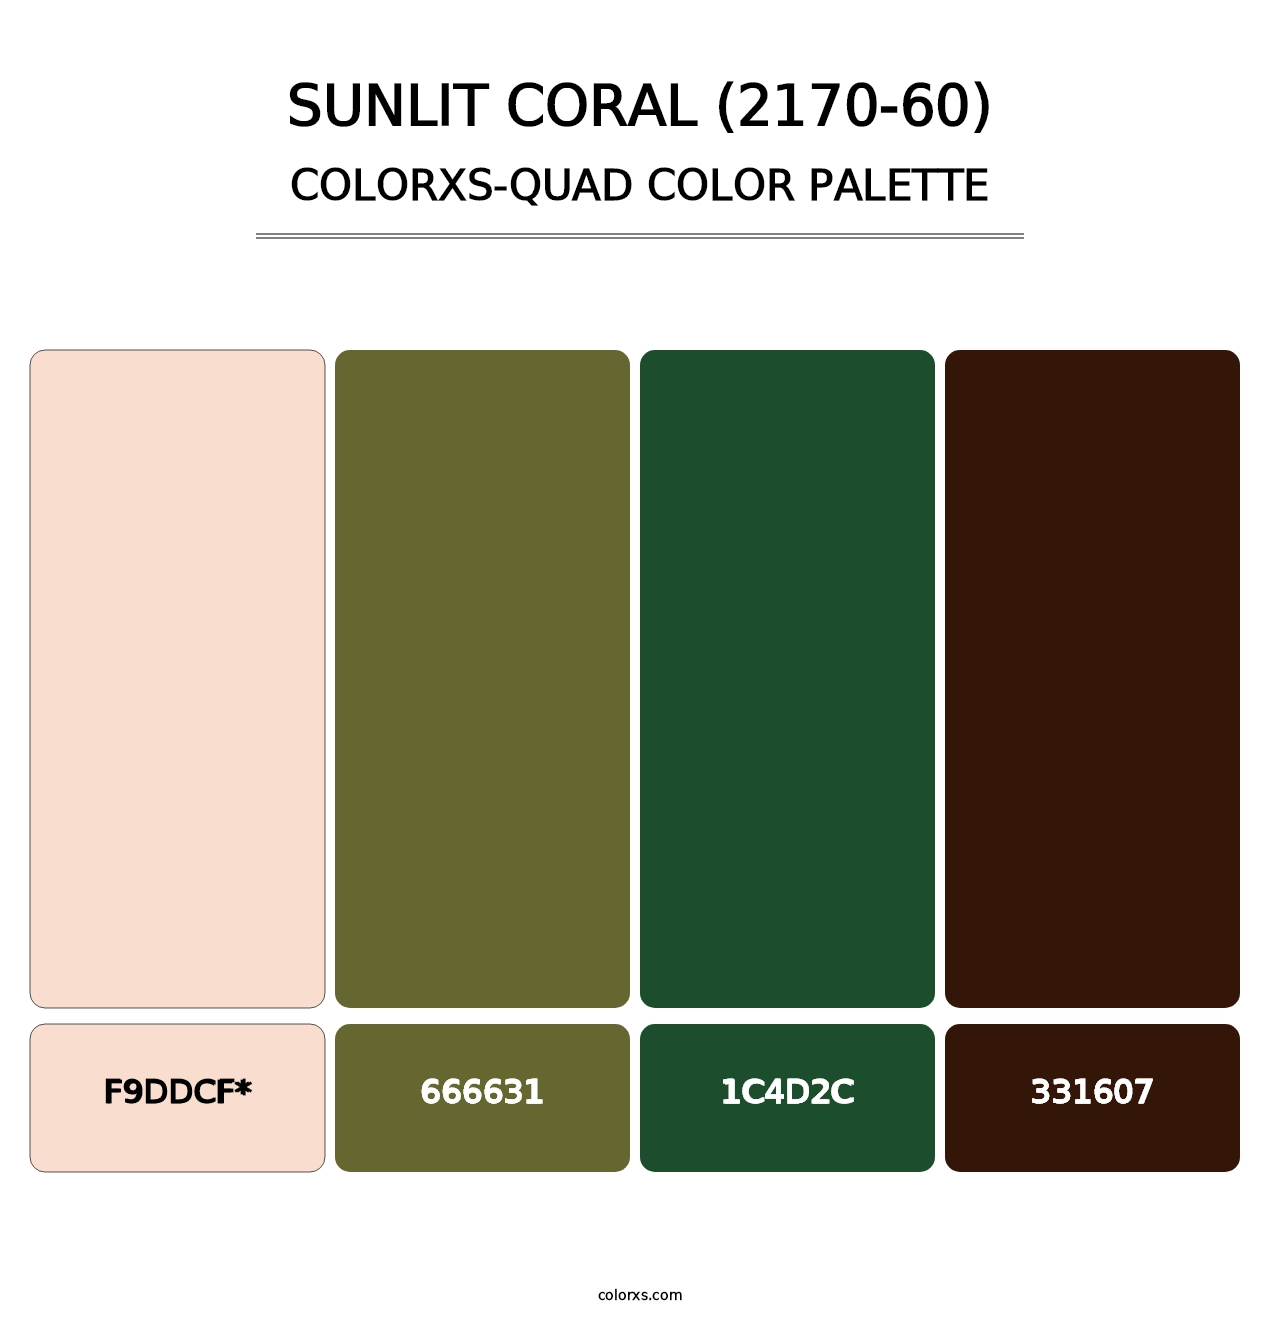 Sunlit Coral (2170-60) - Colorxs Quad Palette